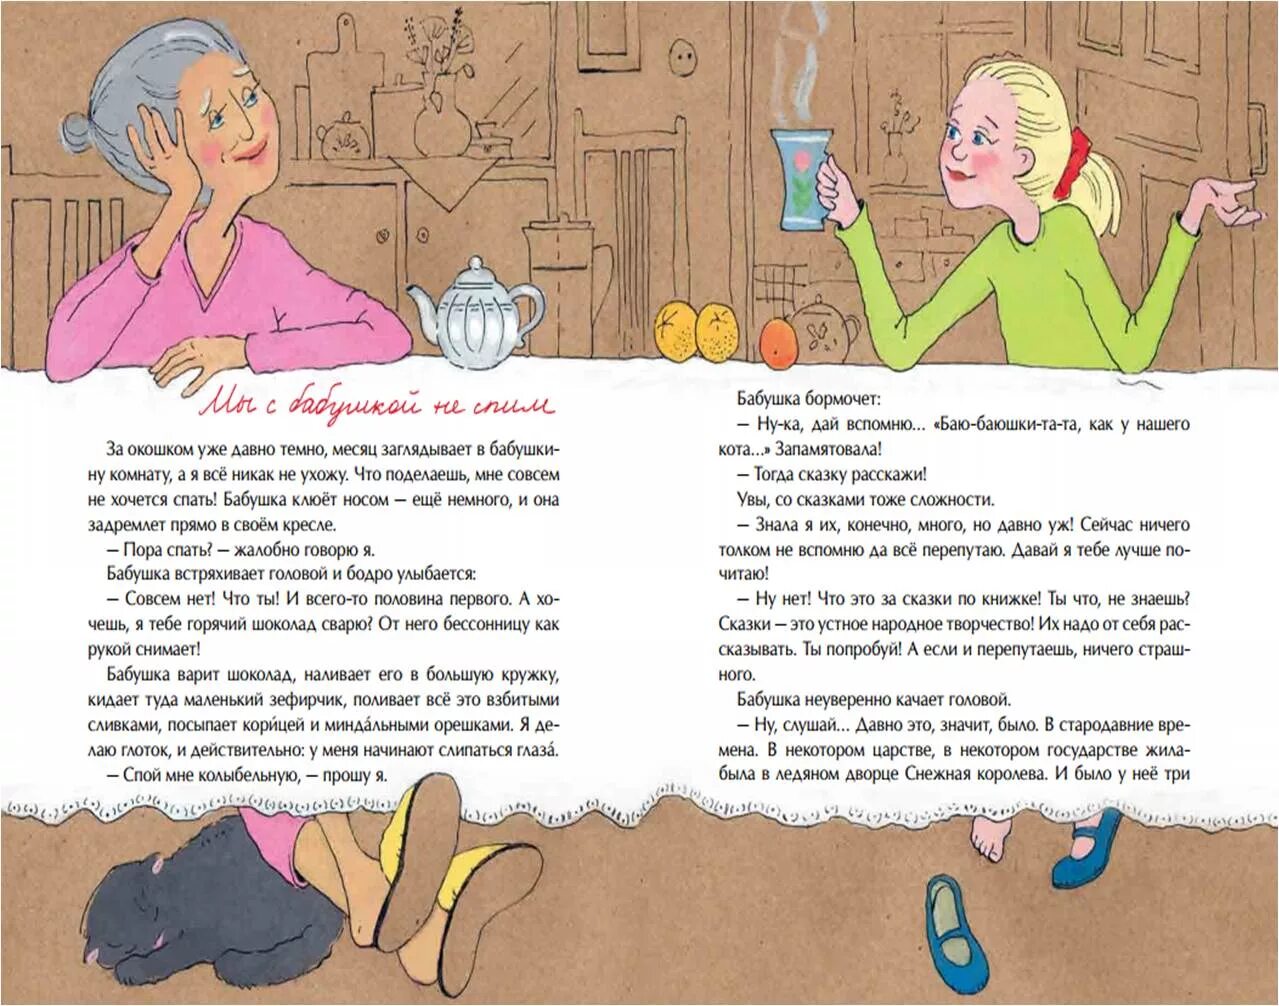 Рассказ про бабушку. Сочинение про бабушку. Hfpprfp j ,f,EIRT. Написать рассказ о бабушке.